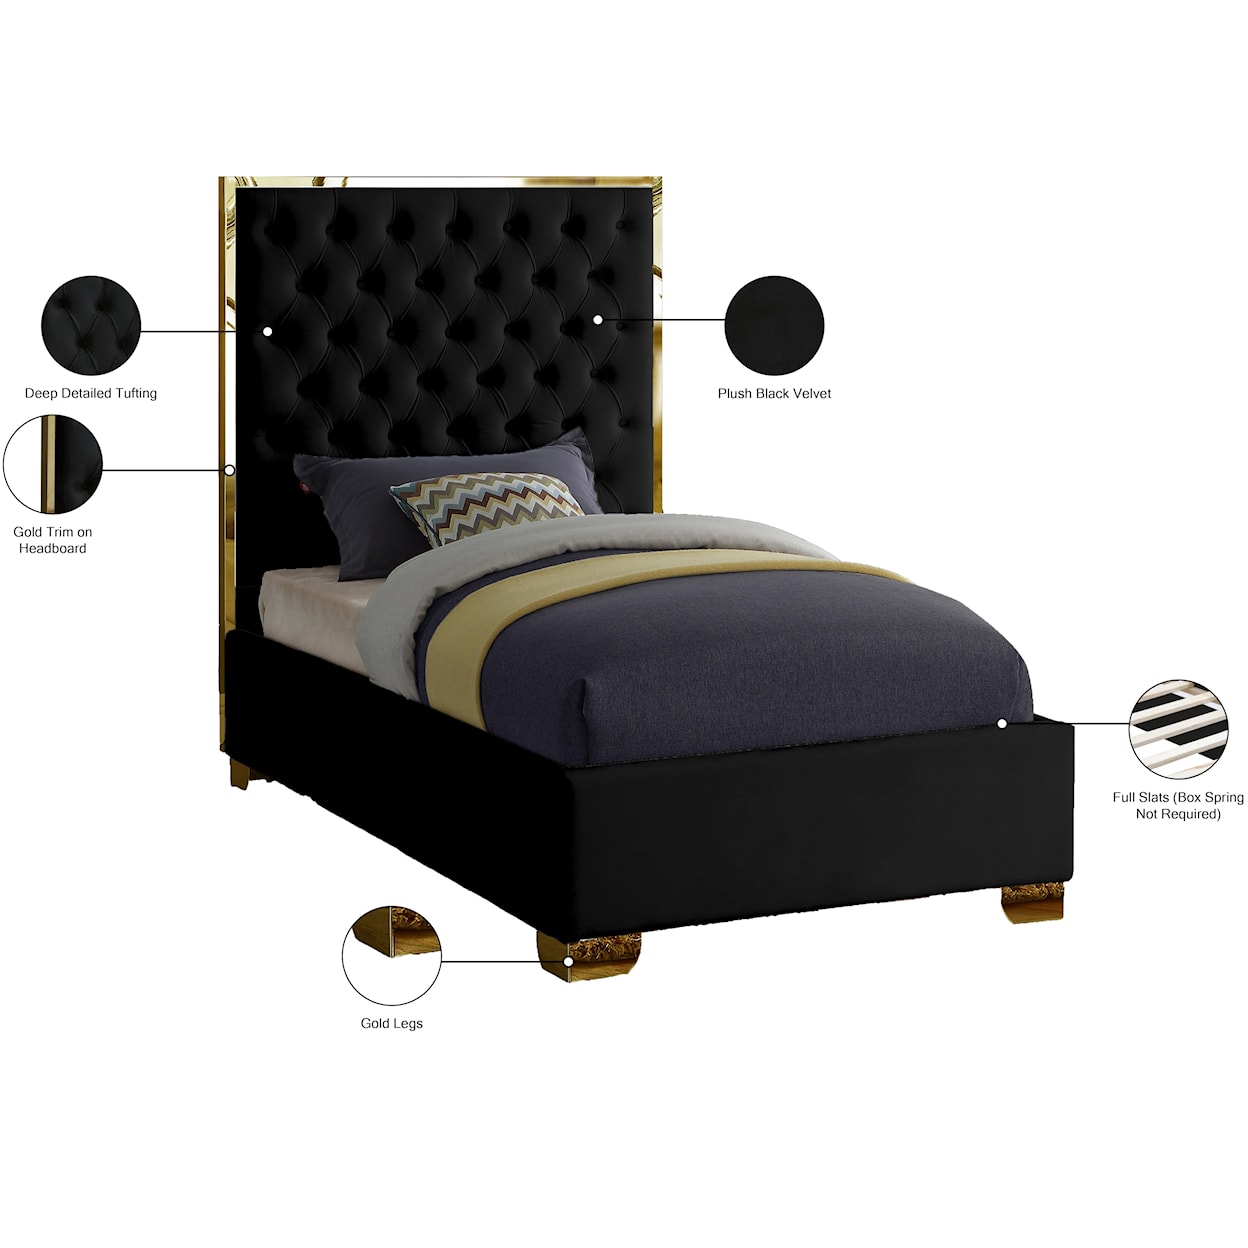 Meridian Furniture Lana Twin Bed